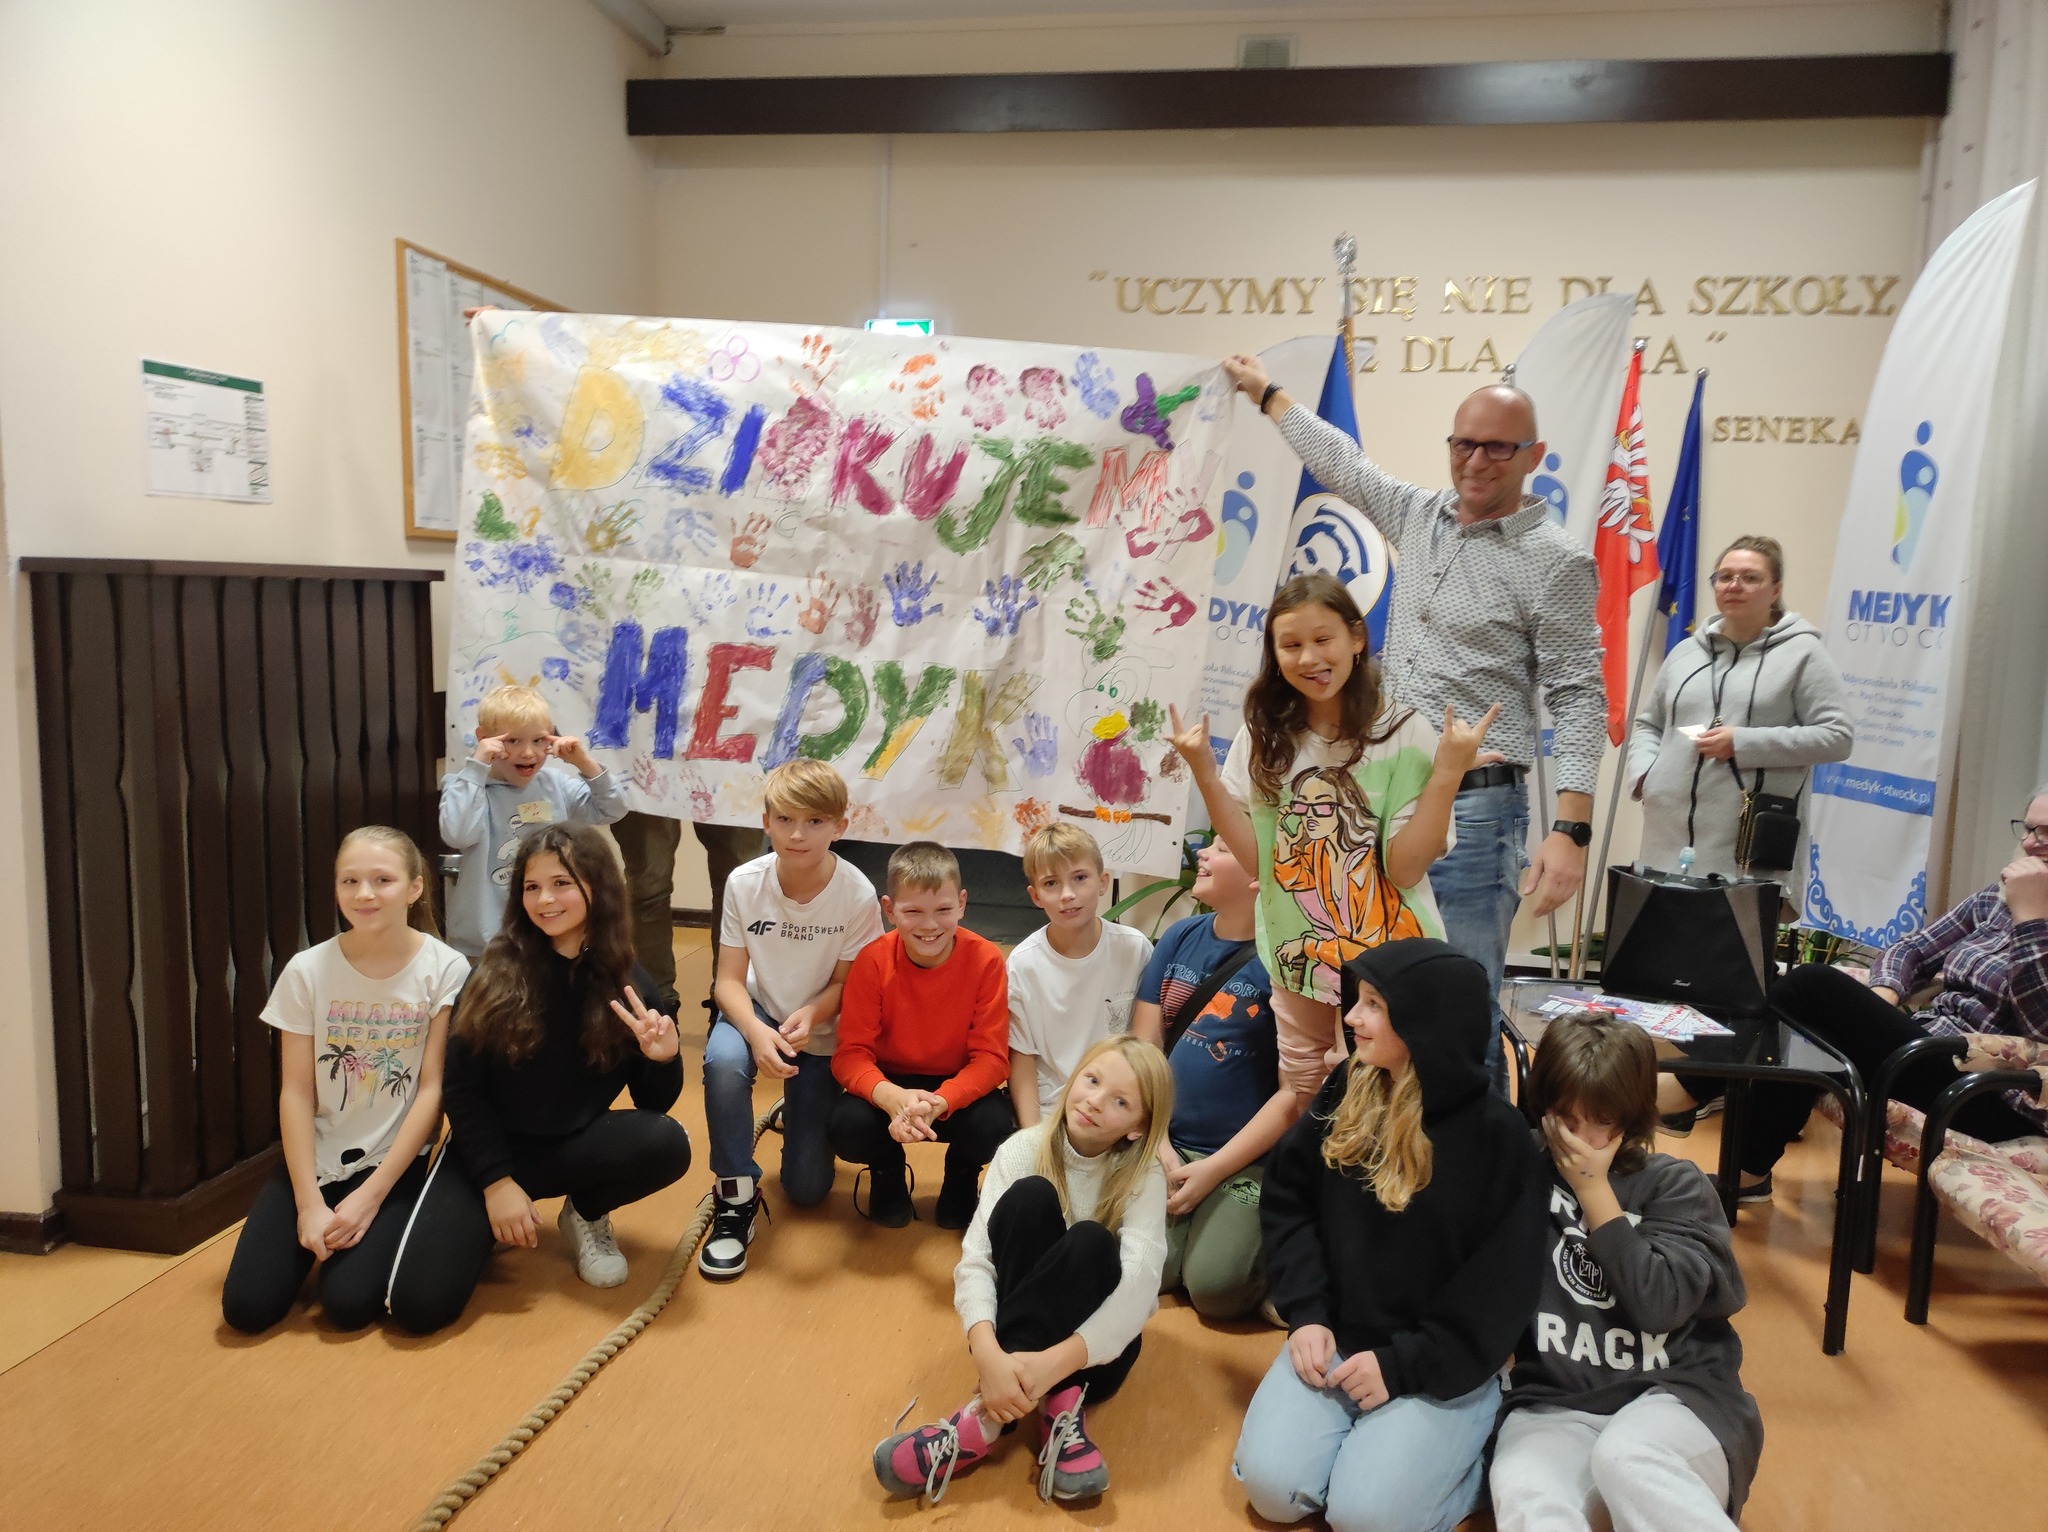 Grupa dzieci z transparentem z napisem dziękujemy